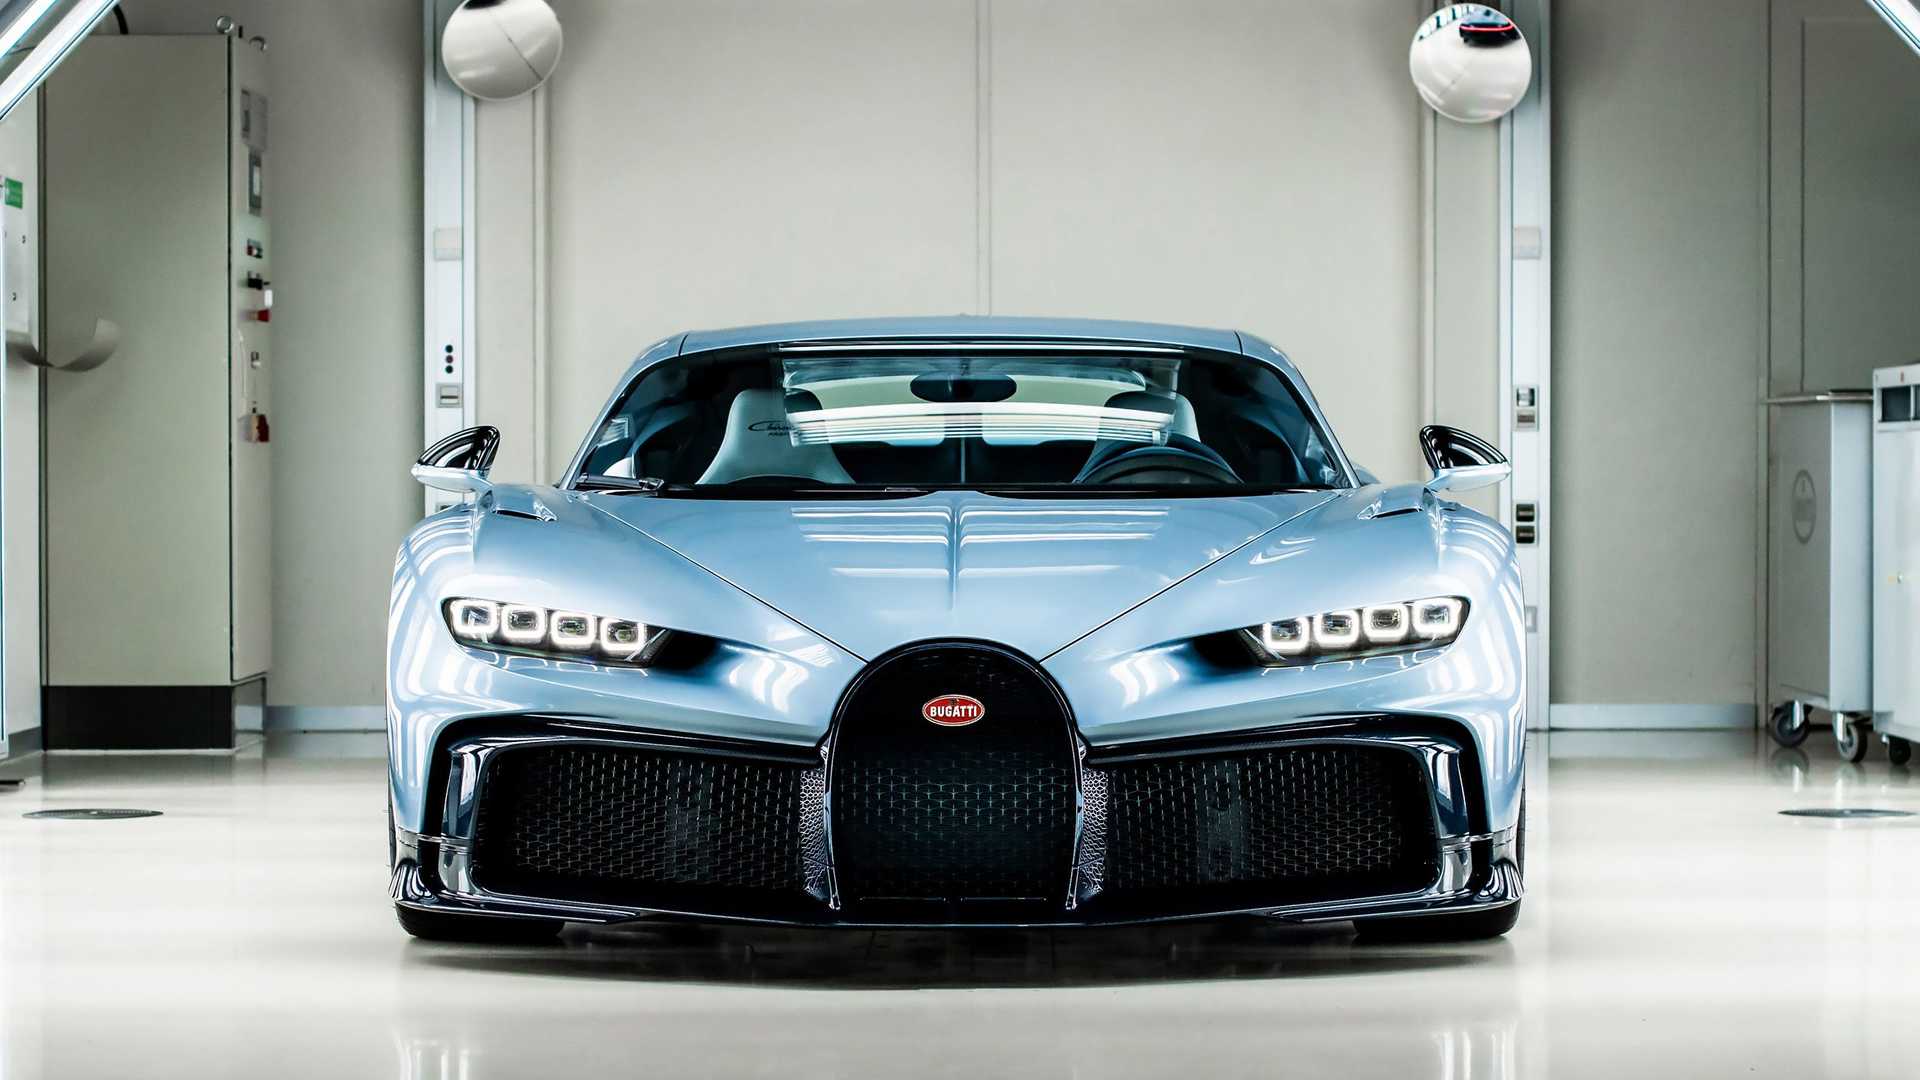 Bugatti giới thiệu mẫu xe mới với tạo hình đèn pha hình chữ X khác biệt